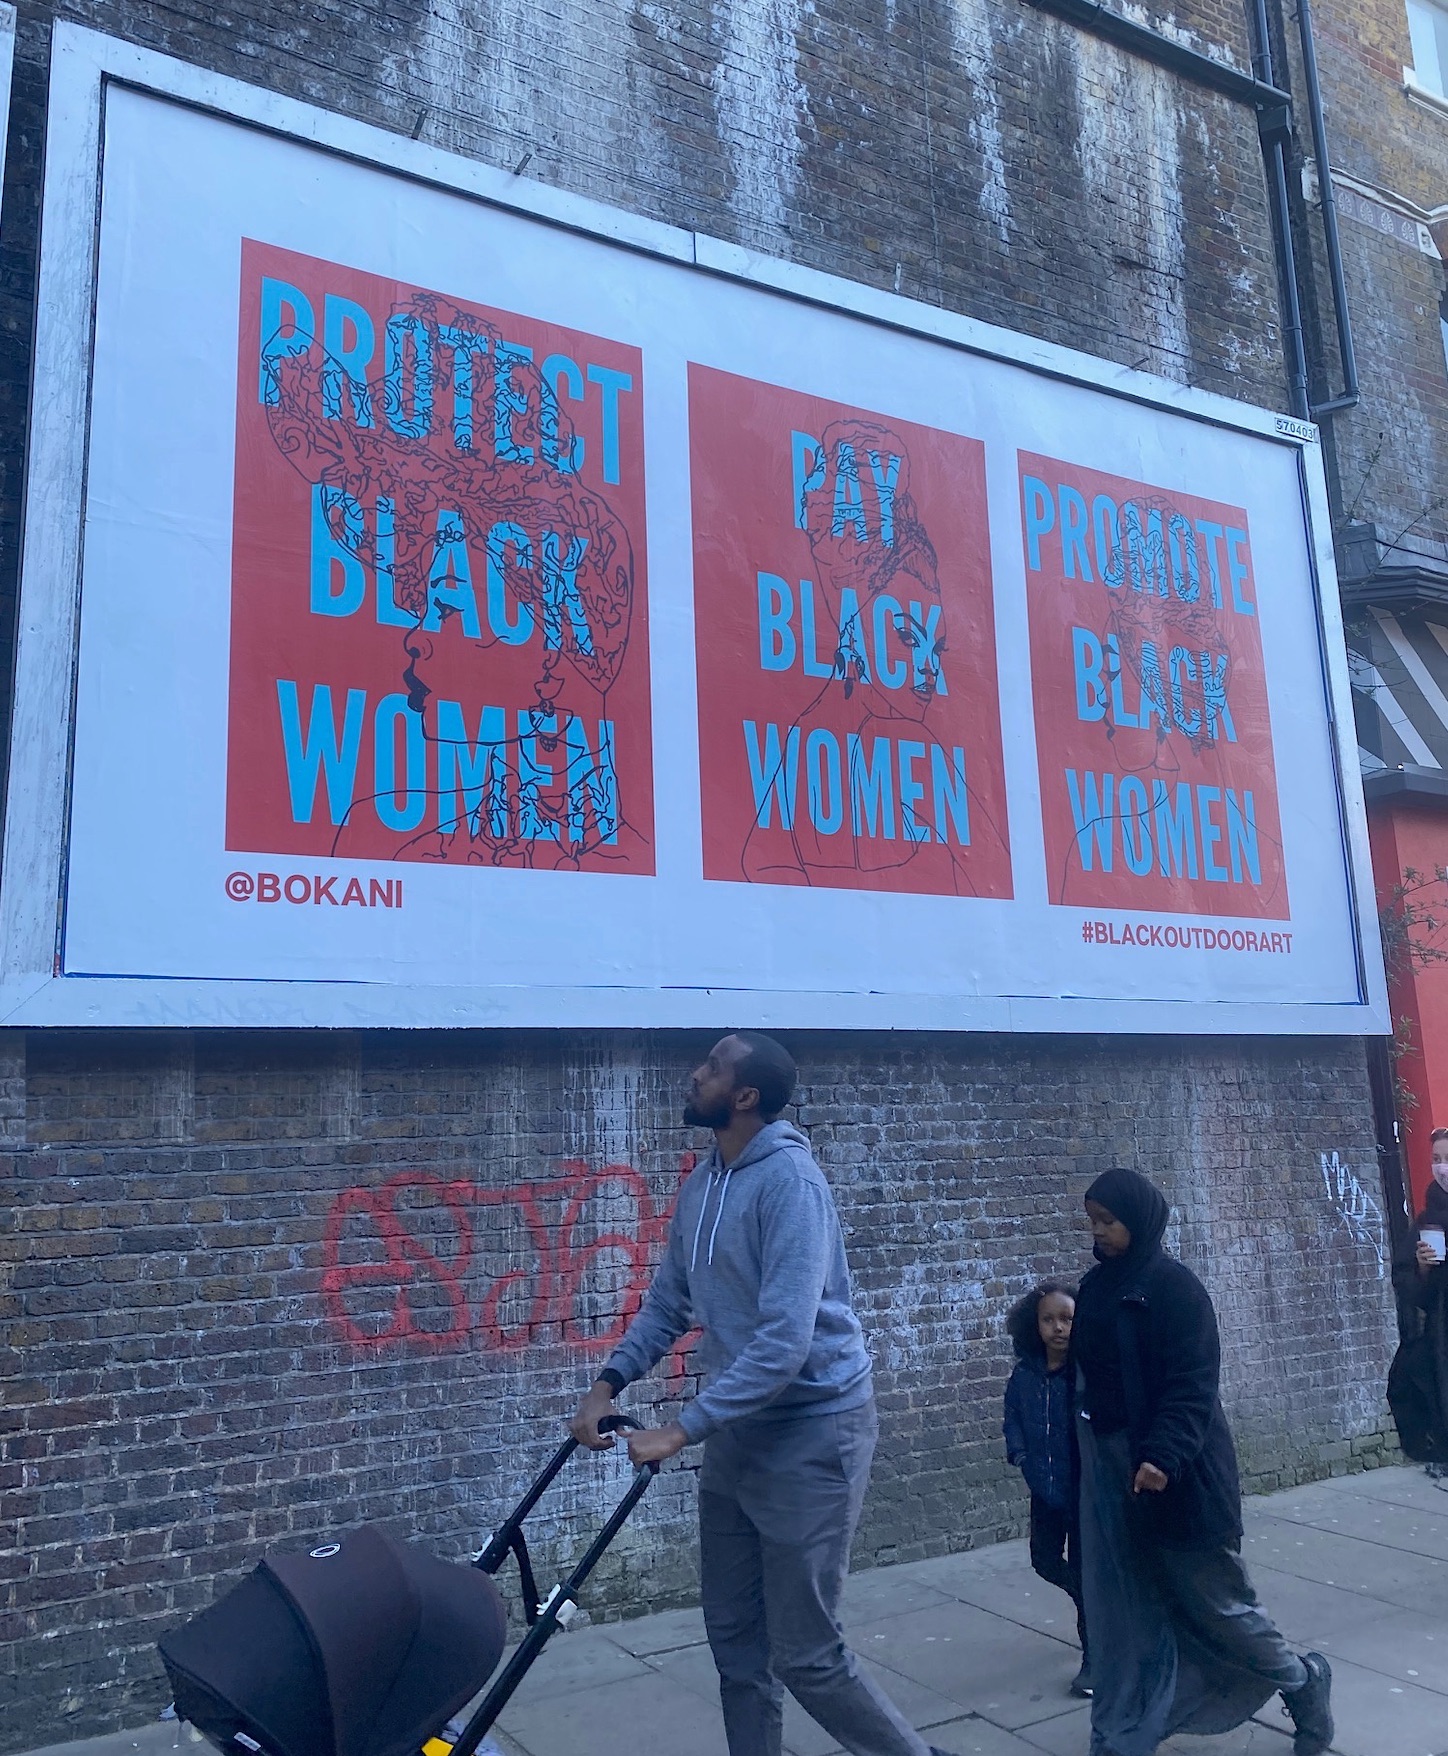 The Wick - Black Women series outside Brixton Station by Bokani (Greg Bunbury)